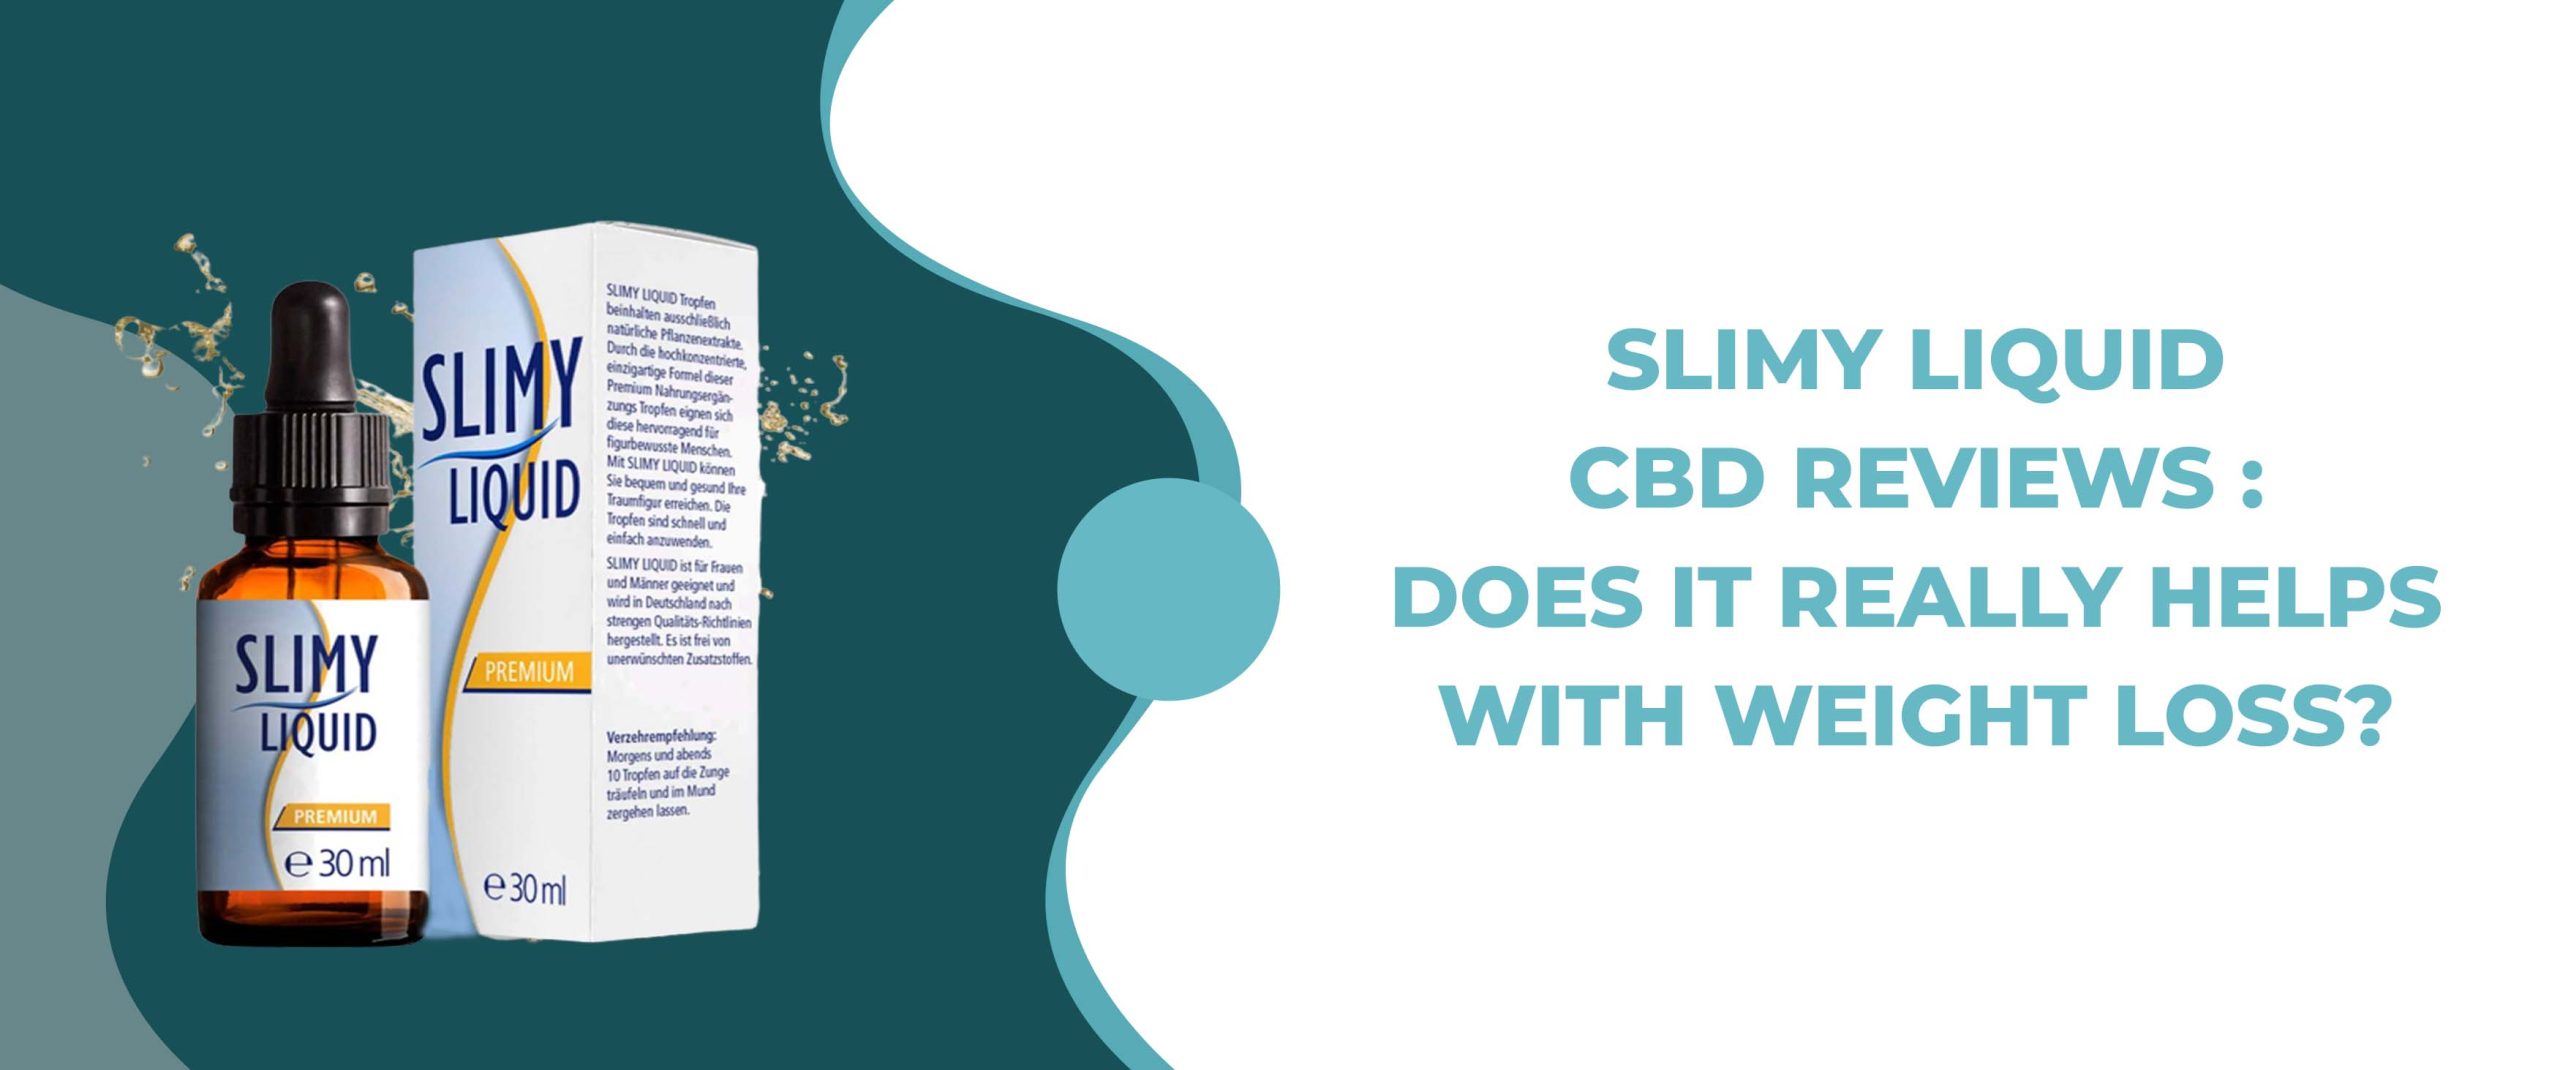 Slimy Liquid CBD Bewertungen – Hilft es wirklich beim Abnehmen?